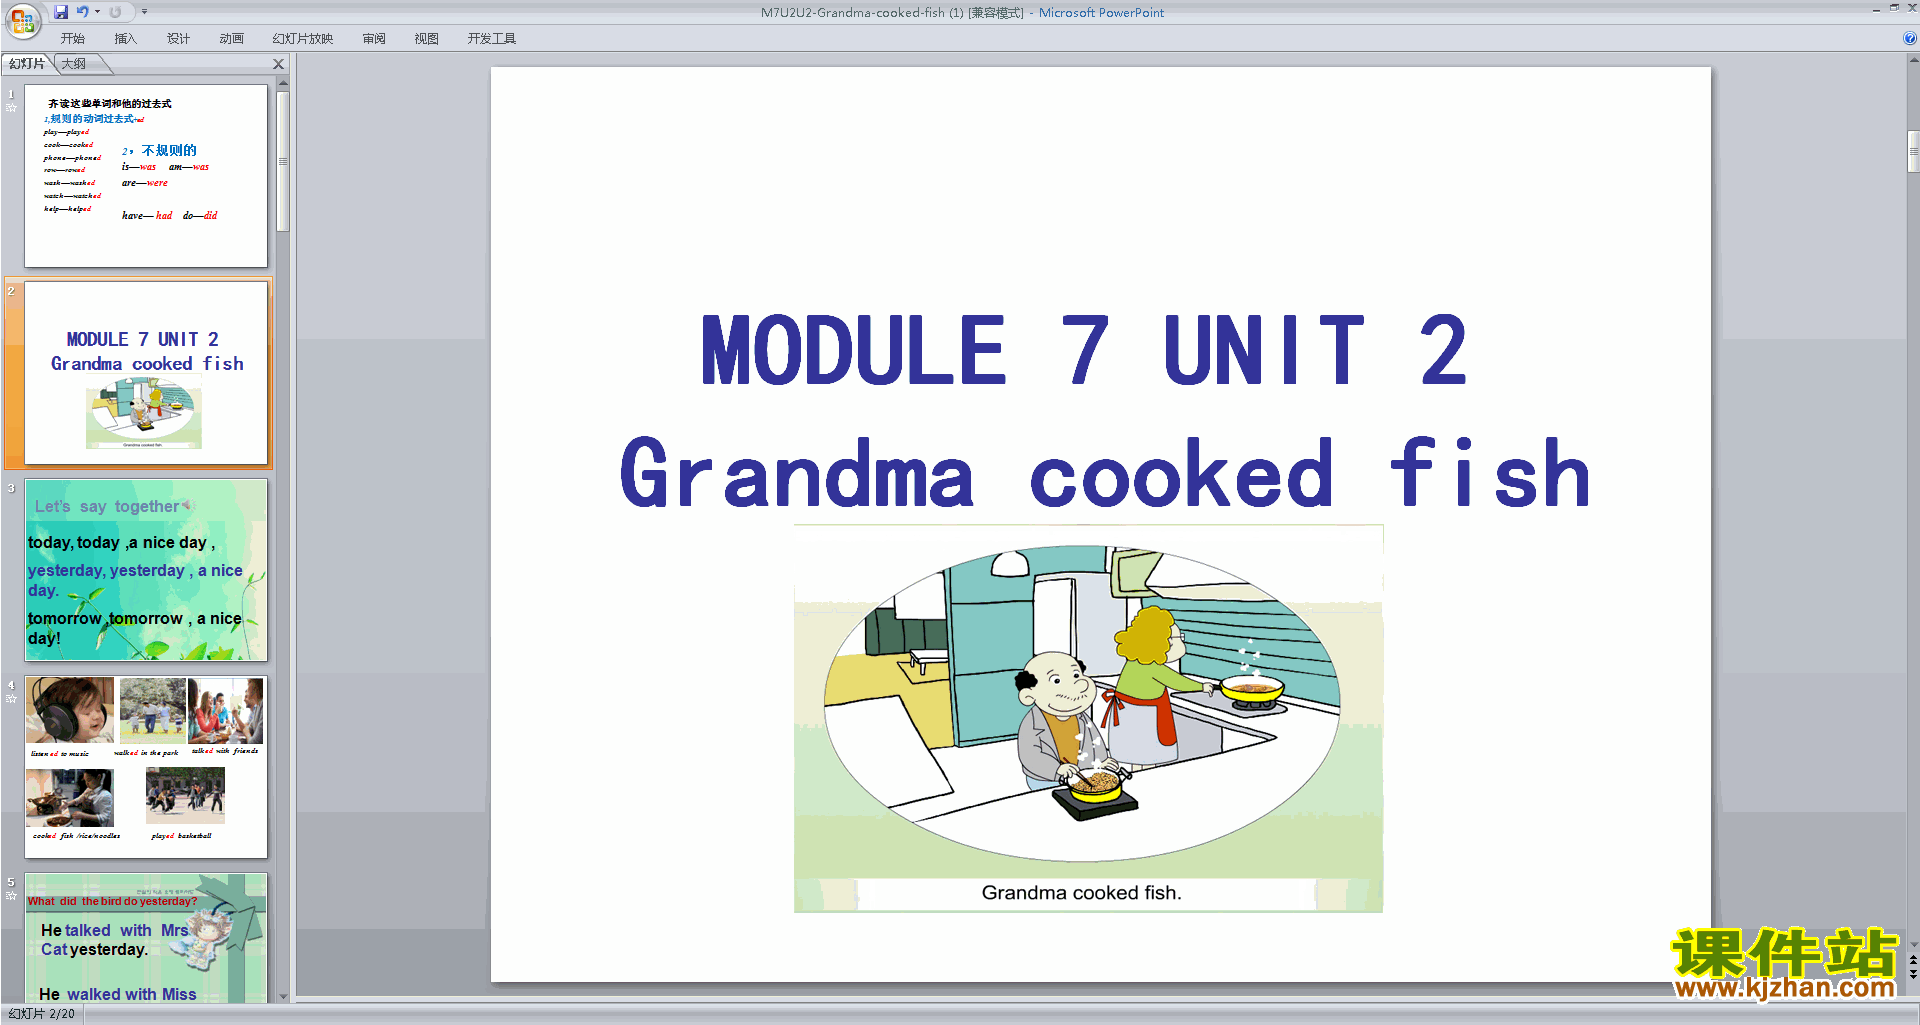 Module7 Unit2 Grandma cooked fishpptμ